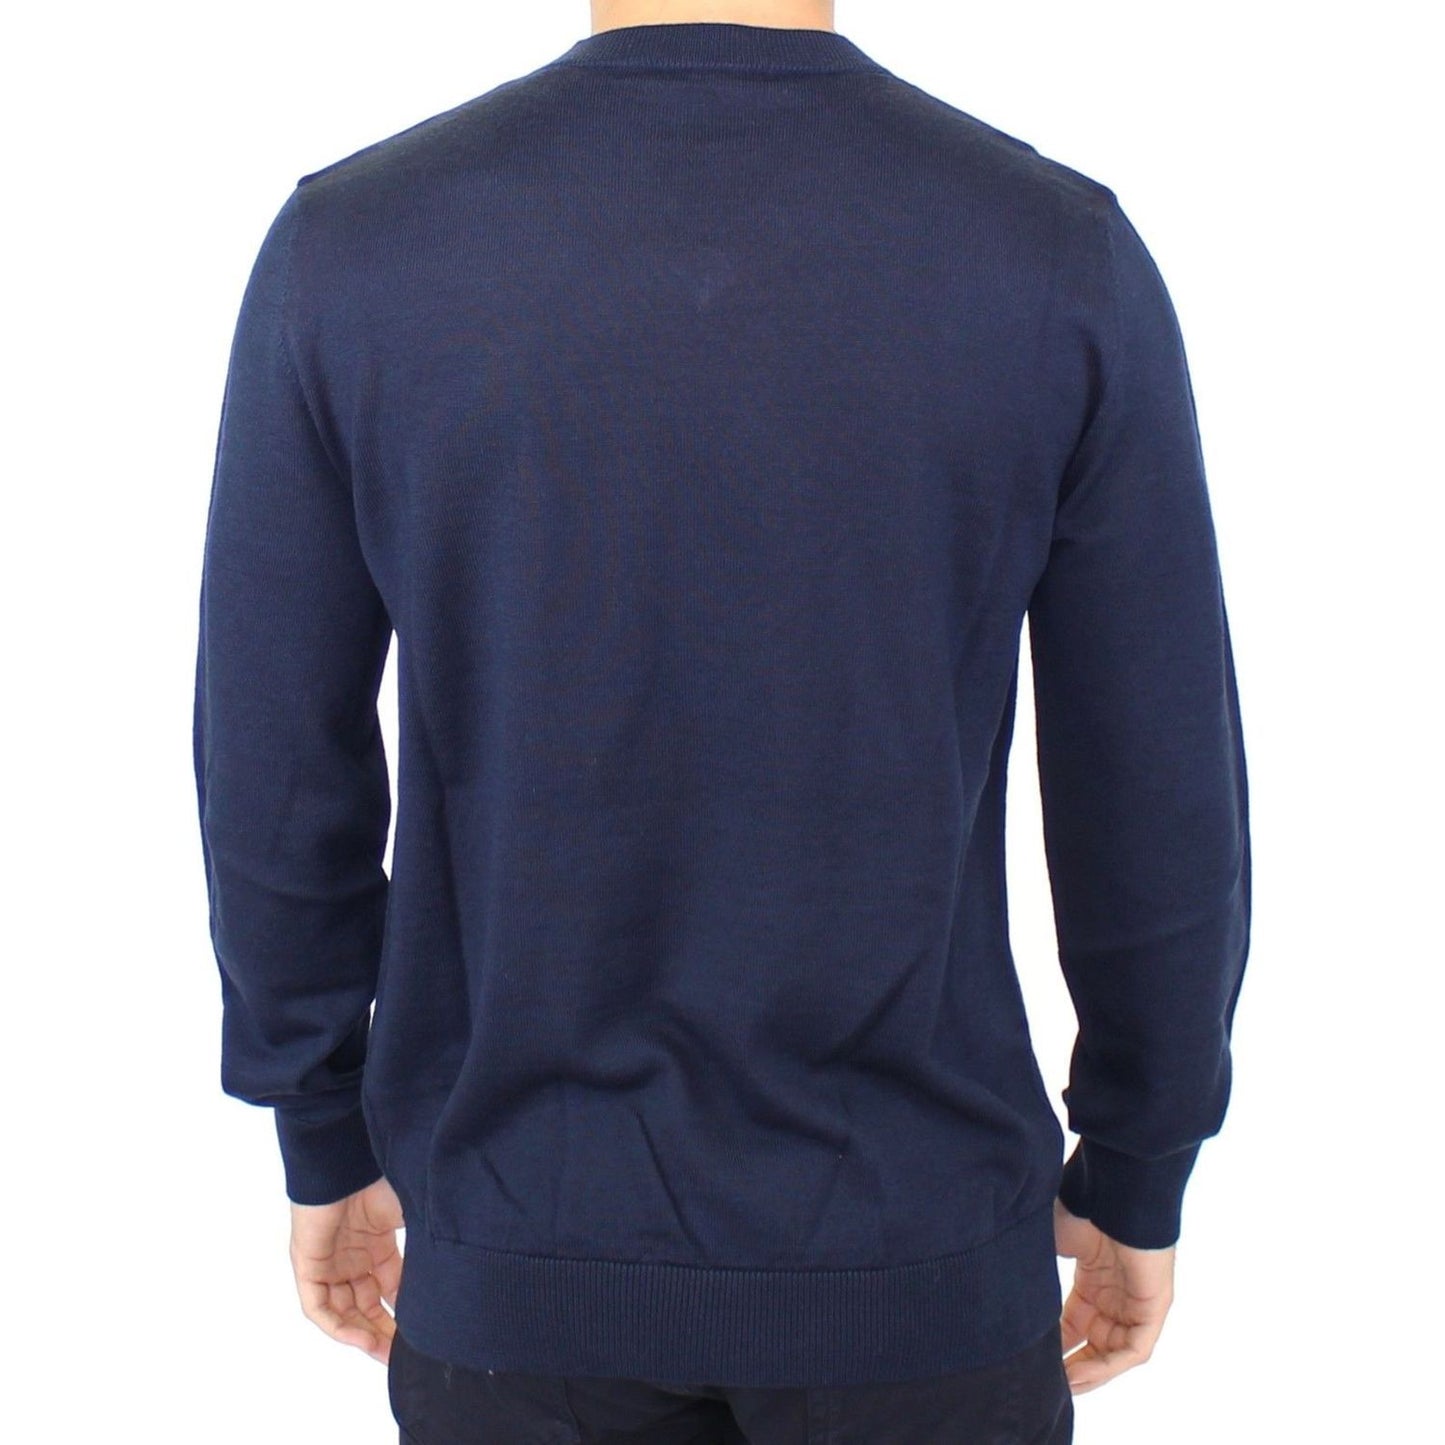 Ermanno Scervino Elegant Blue V-Neck Wool Blend Pullover blue-wool-blend-v-neck-pullover-sweater 37438-blue-wool-blend-v-neck-pullover-sweater-2.jpg